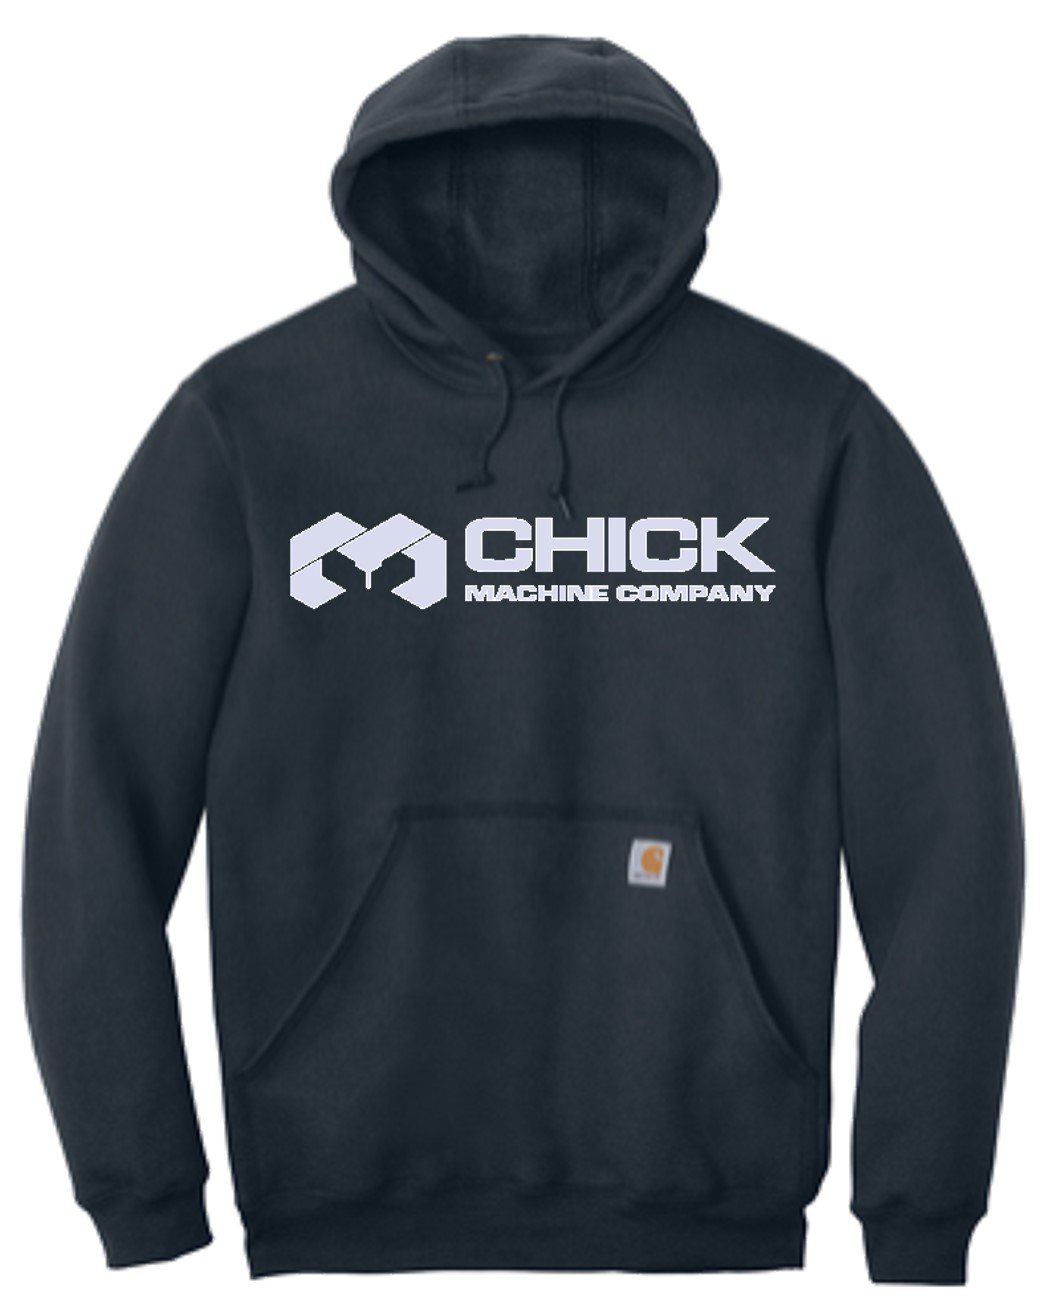 Chick Machine Hooded Sweatshirt